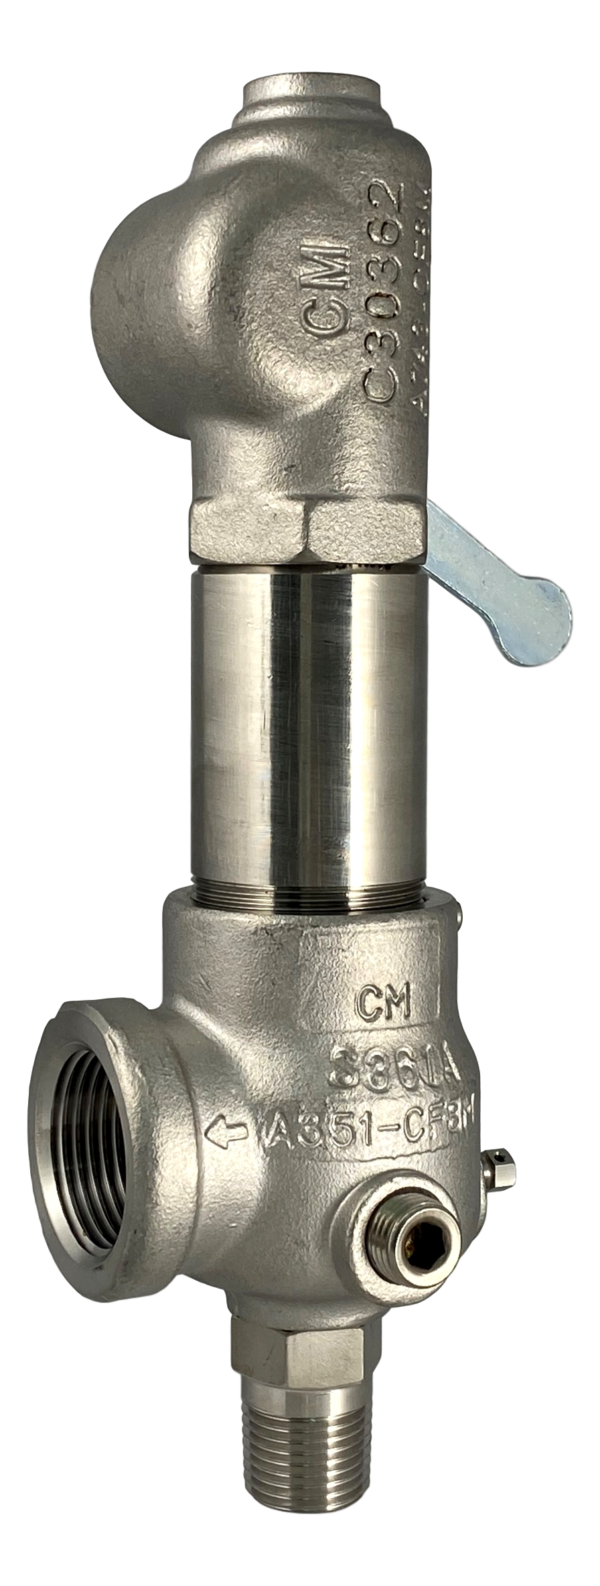 Kunkle 911BDDM06 - .75" x 1" - Packed Lever - Buy Kunkle valves online